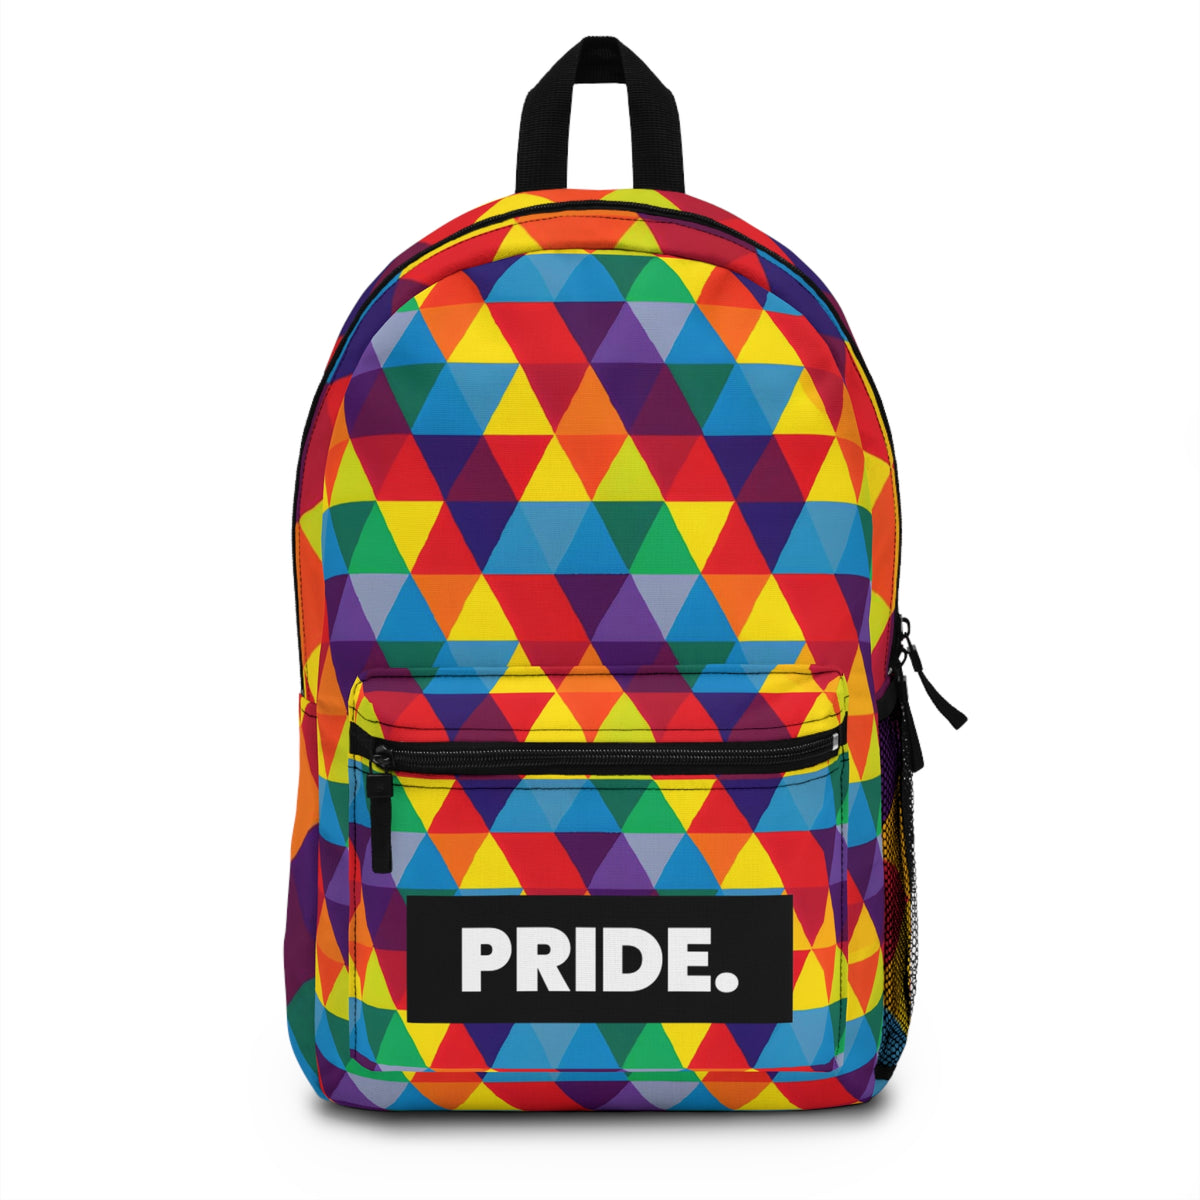 RadicalRoxy - Gay Pride Backpack